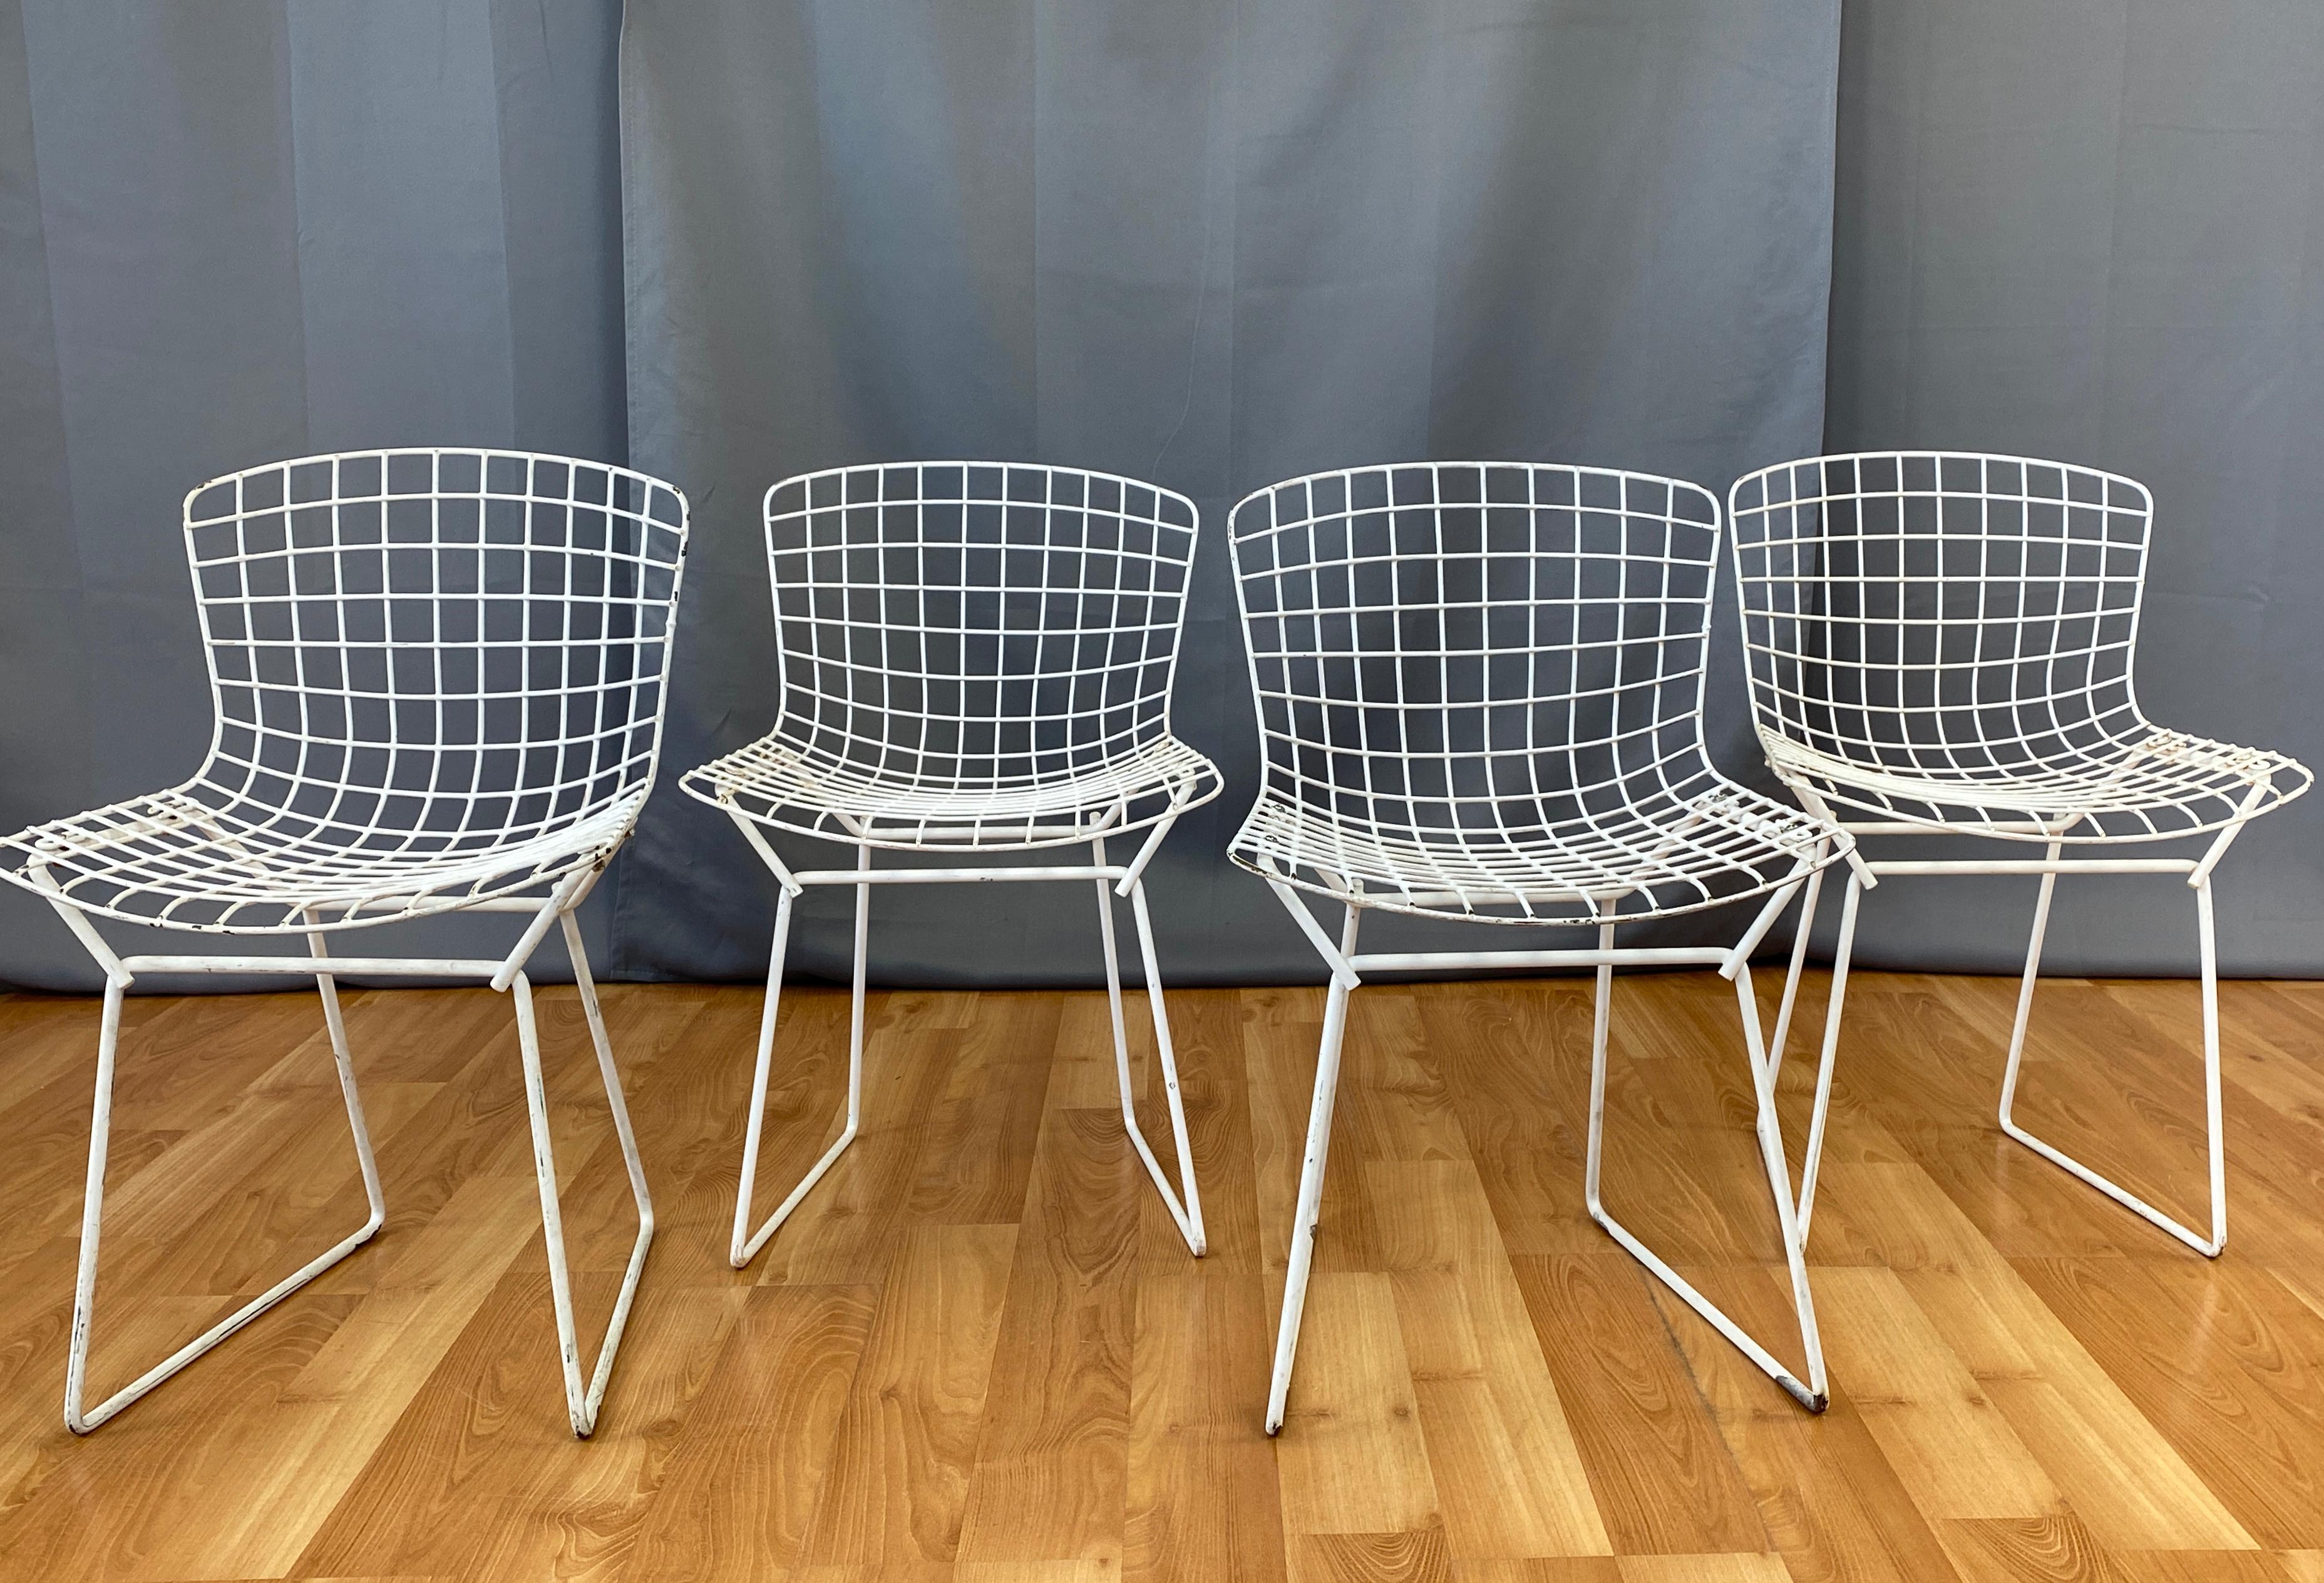 Angeboten werden hier vier von Harry Bertoia entworfene Kinderstühle für Knoll.
Der erste Entwurf stammt aus dem Jahr 1950. Alle sind weiß.